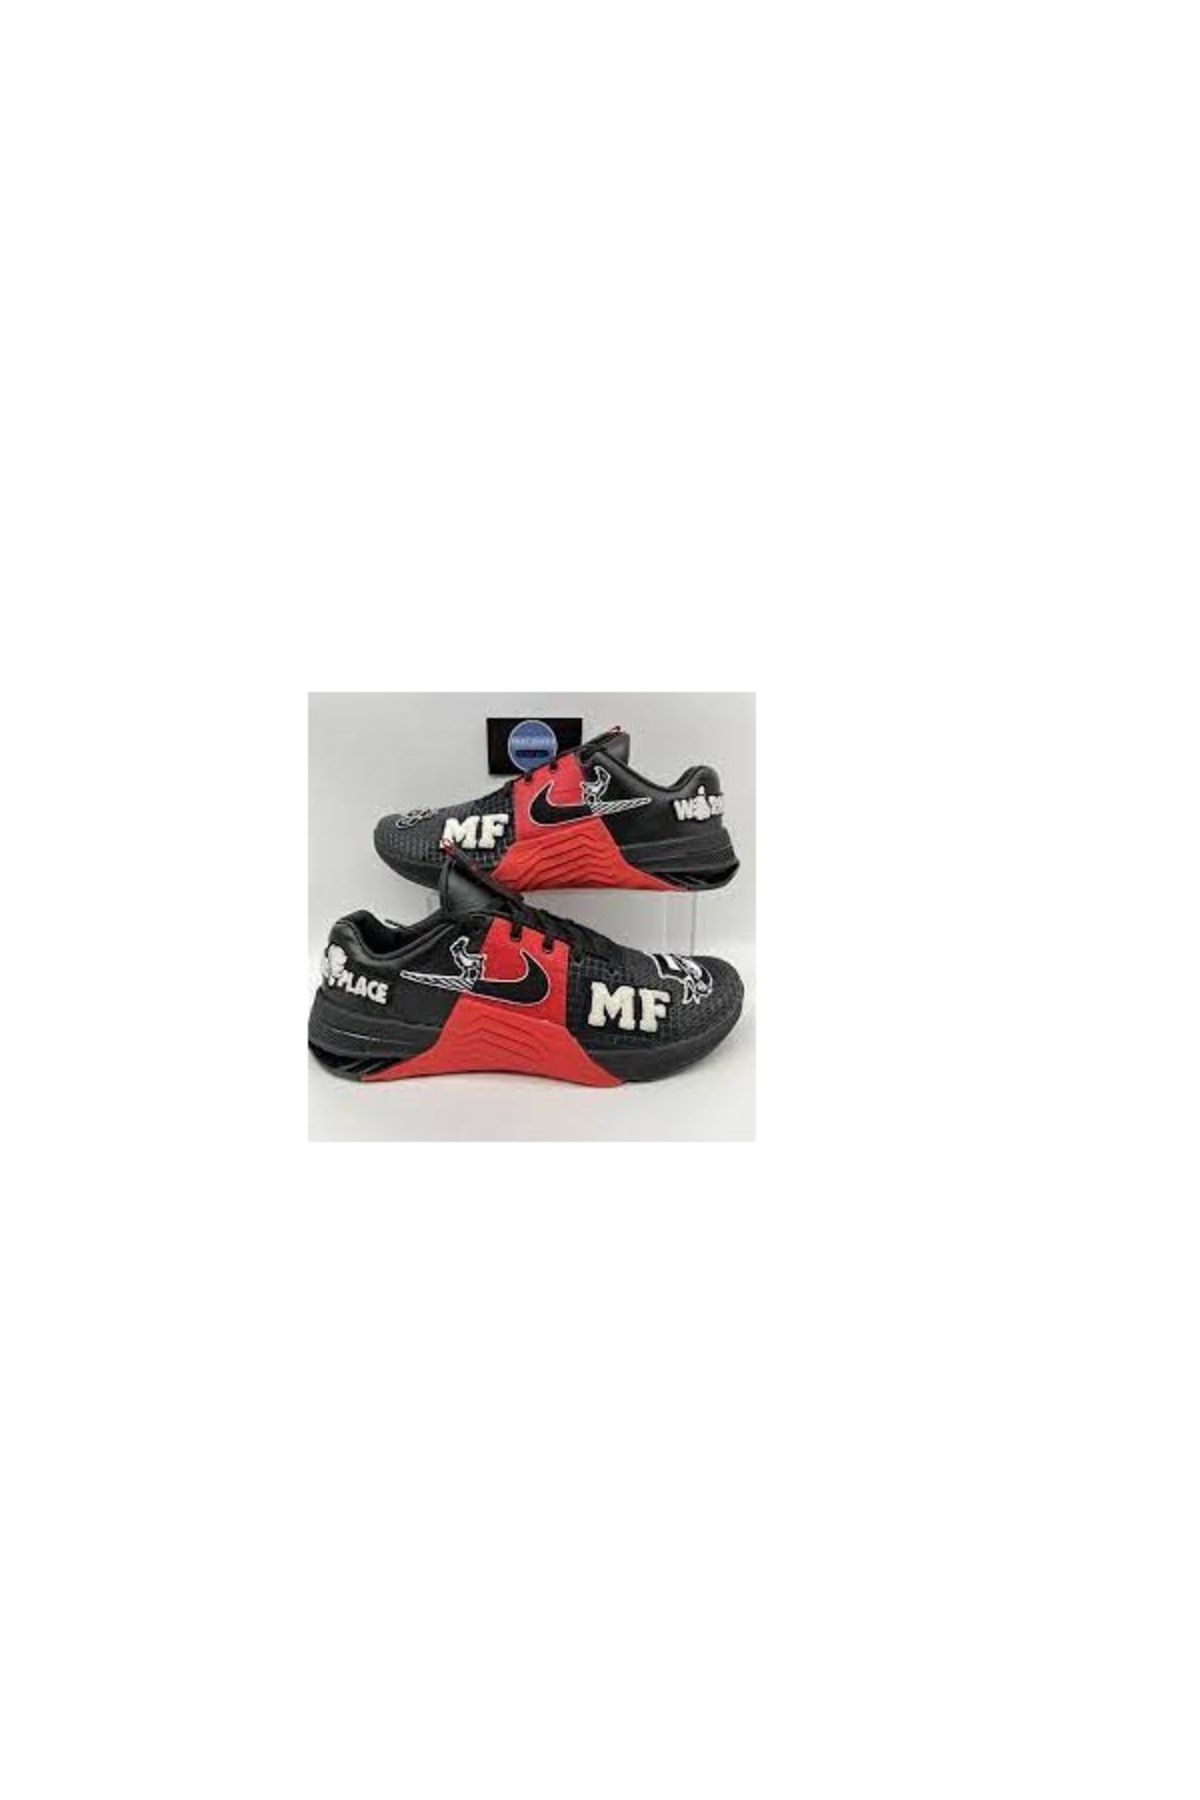 Nike METCOM 8 MF DO9387 001